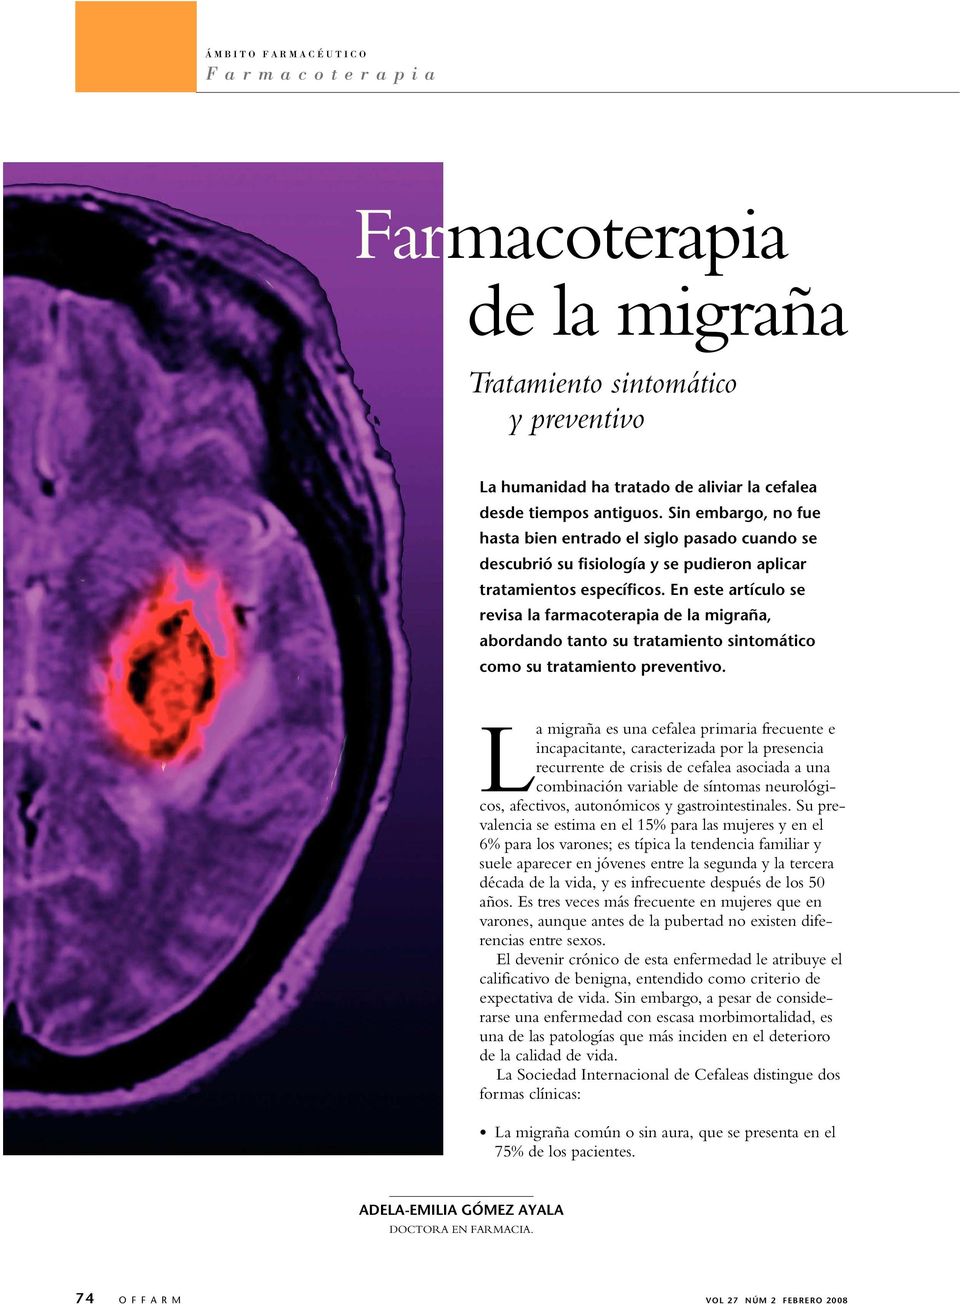 En este artículo se revisa la farmacoterapia de la migraña, abordando tanto su tratamiento sintomático como su tratamiento preventivo.